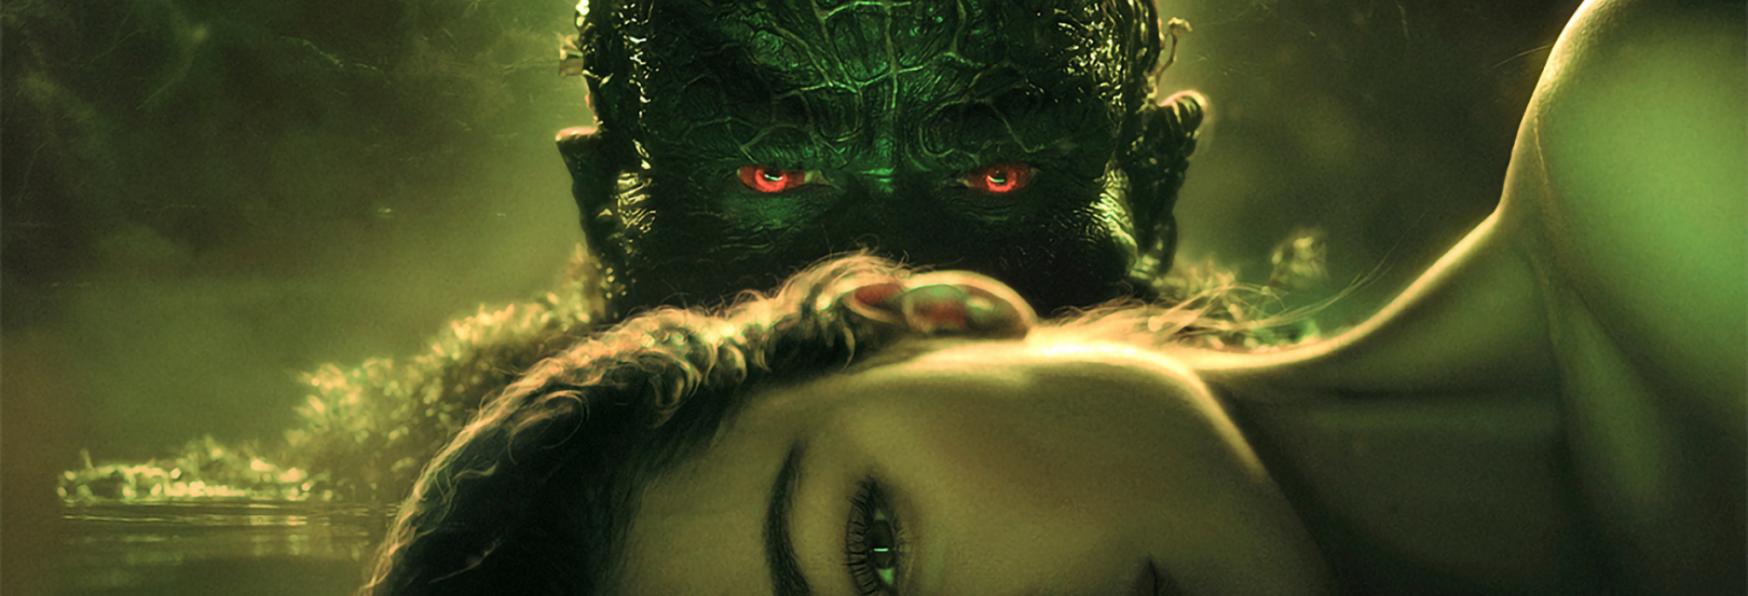 Swamp Thing: Rilasciato il Poster per la Premiere della Serie TV su The CW